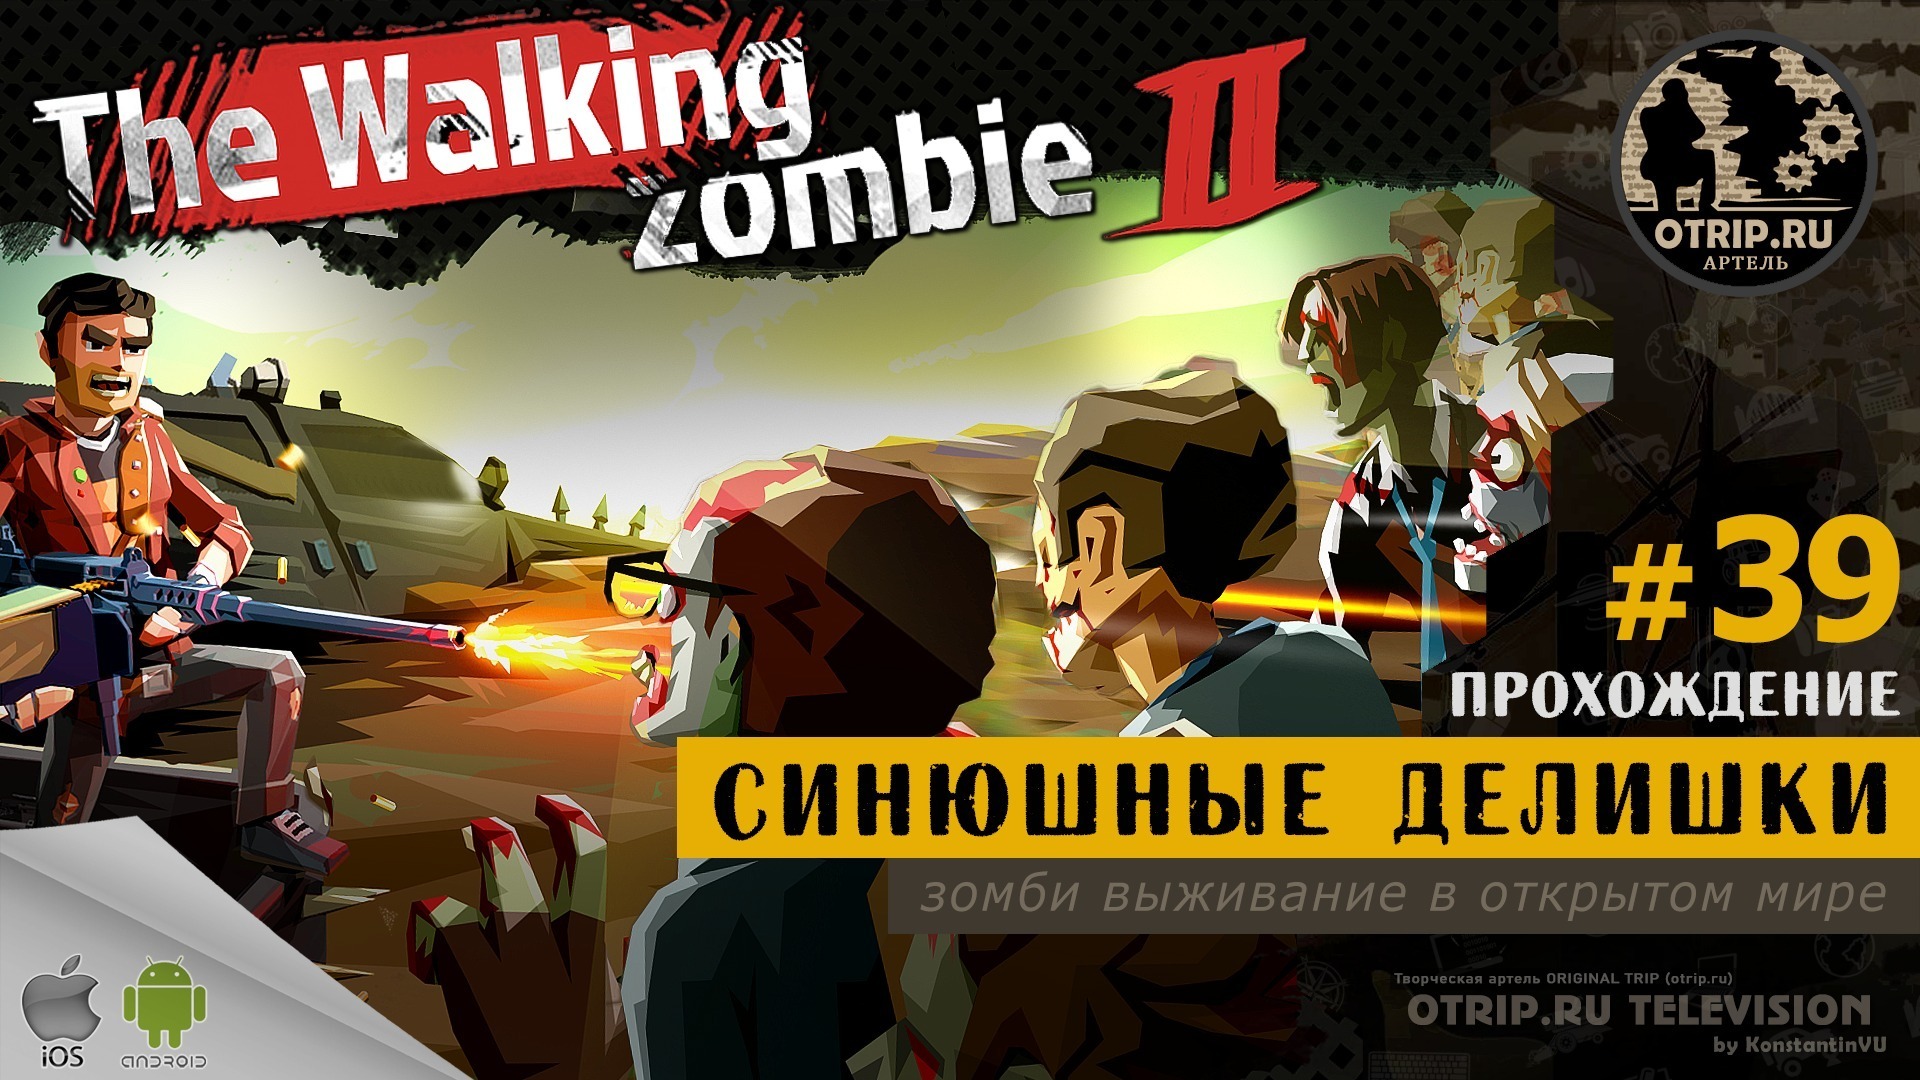 Предательство прохождение. The Walking Zombie 2 плохая карма. Прохождение the Walking Zombie 2023.